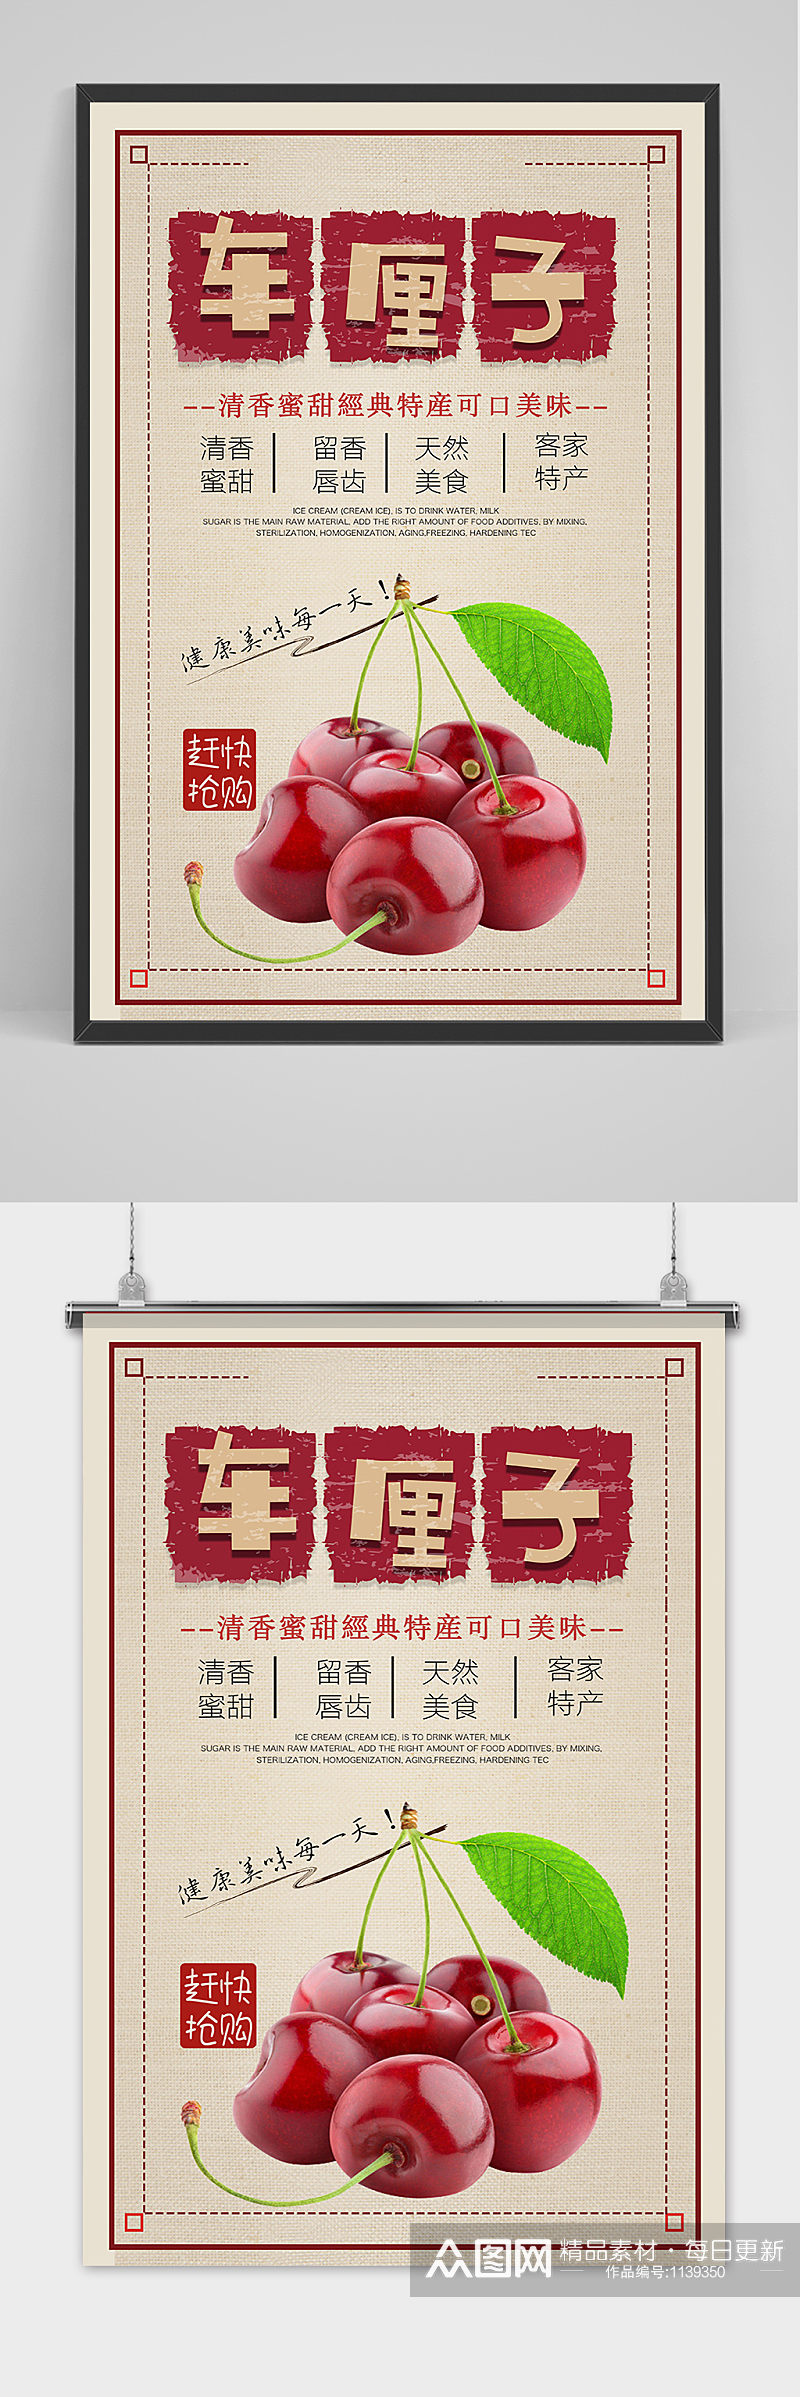 中国风清新樱桃车厘子水果海报素材